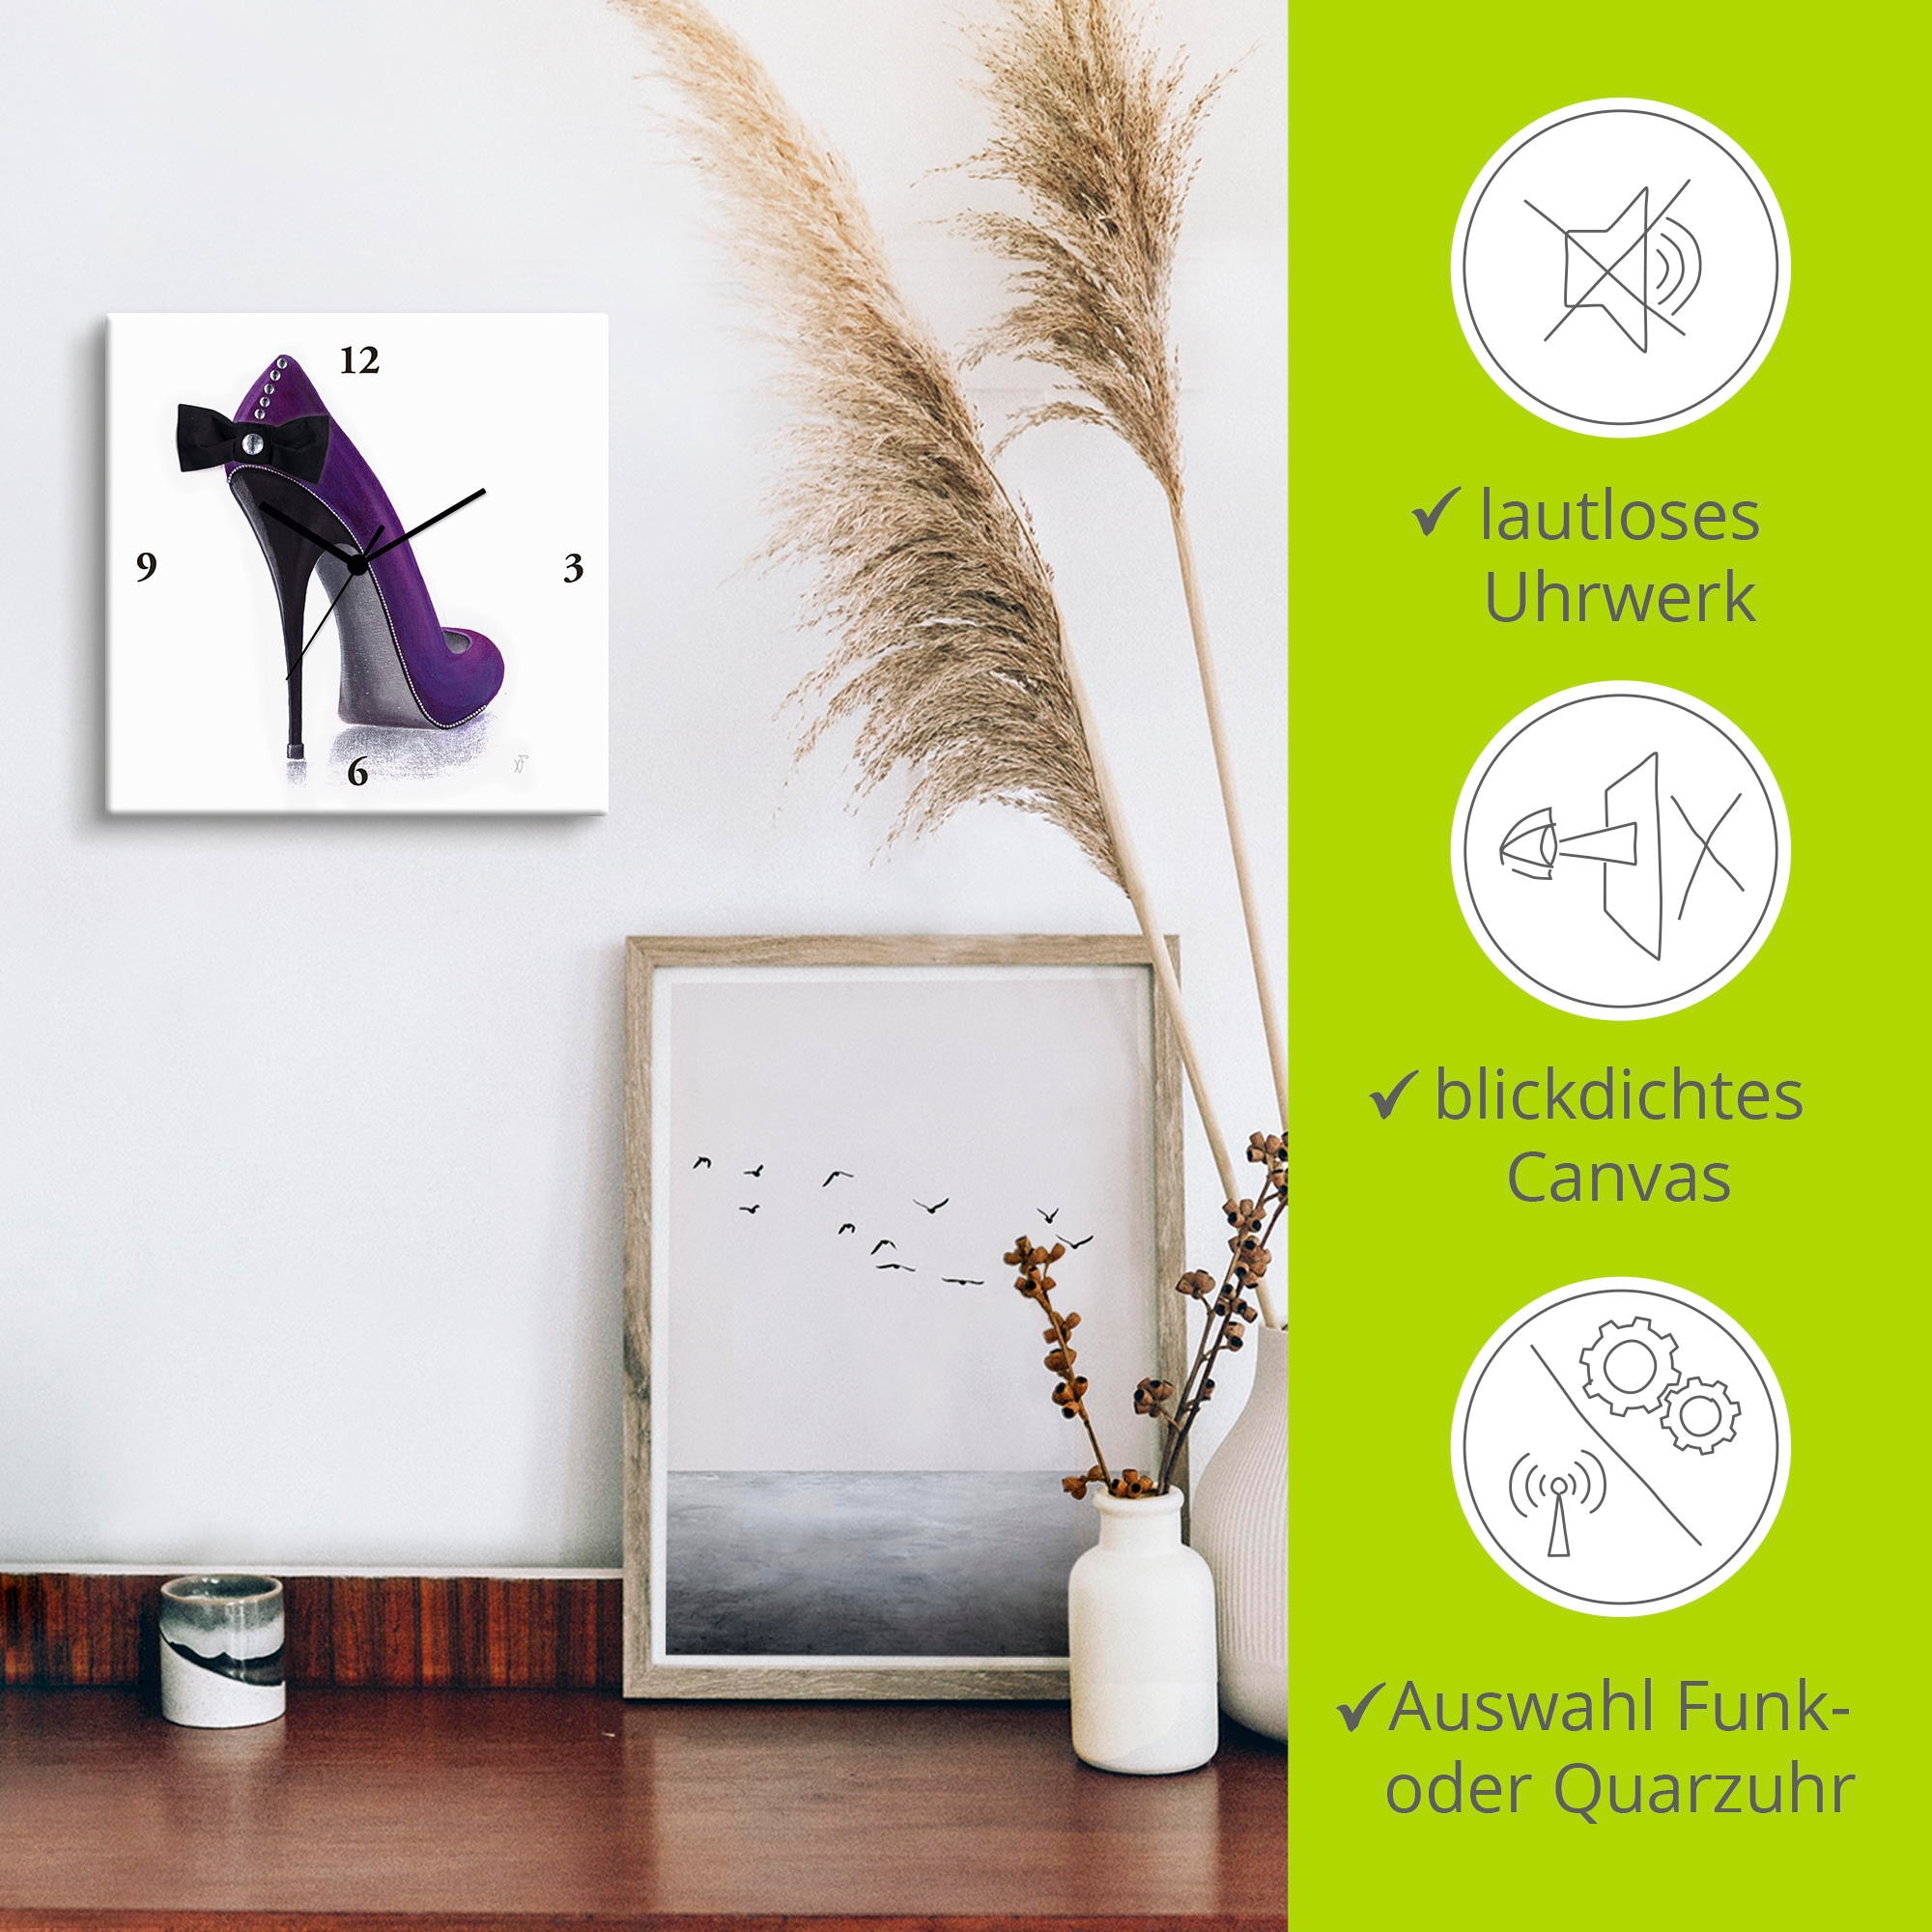 Artland Wanduhr »Damenschuh - Violettes Modell«, wahlweise mit Quarz- oder Funkuhrwerk, lautlos ohne Tickgeräusche